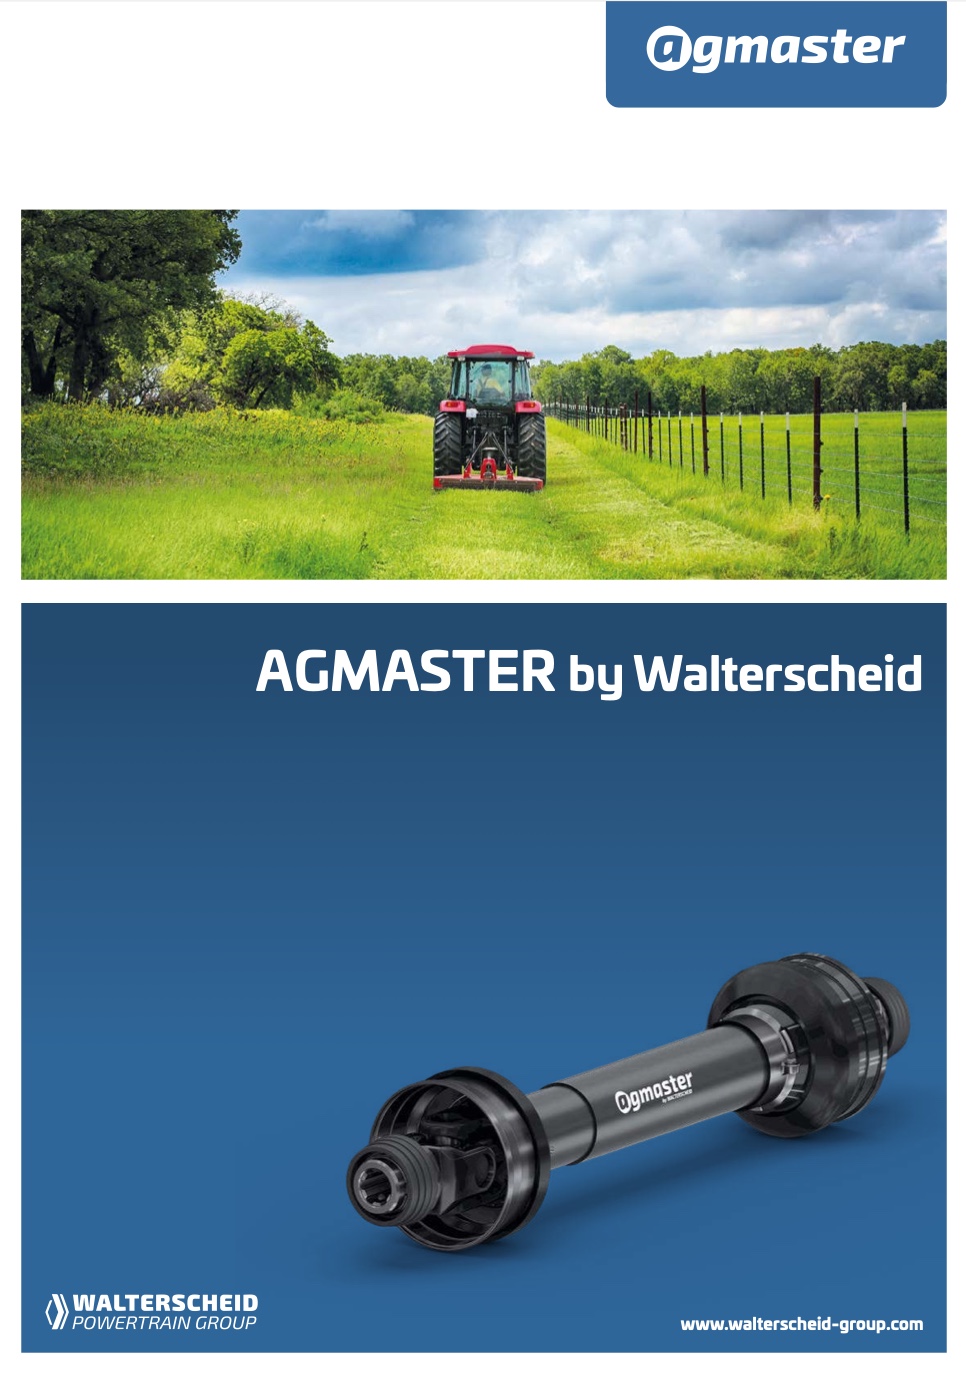 Walterscheid Agmaster brochure